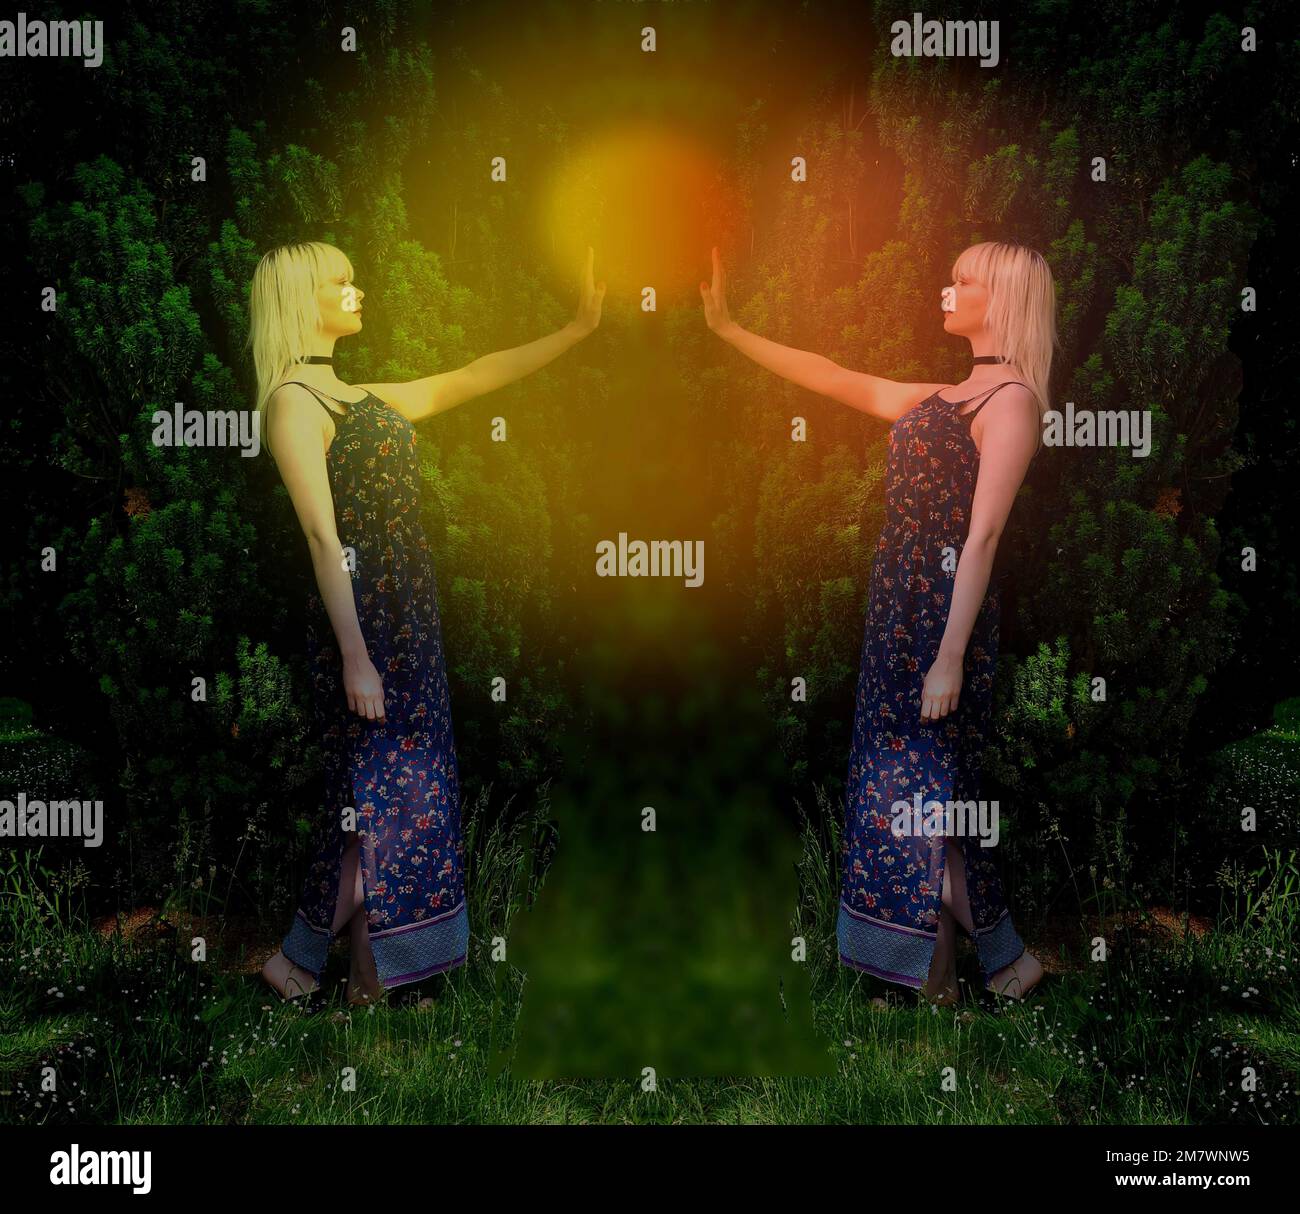 Junge blonde Frau in blauem Kleid mit Spiegelbild und mit glühender Kugel, die zwischen ihrer erhobenen Hand schwebt, großer Busch hinter ihr. Stockfoto